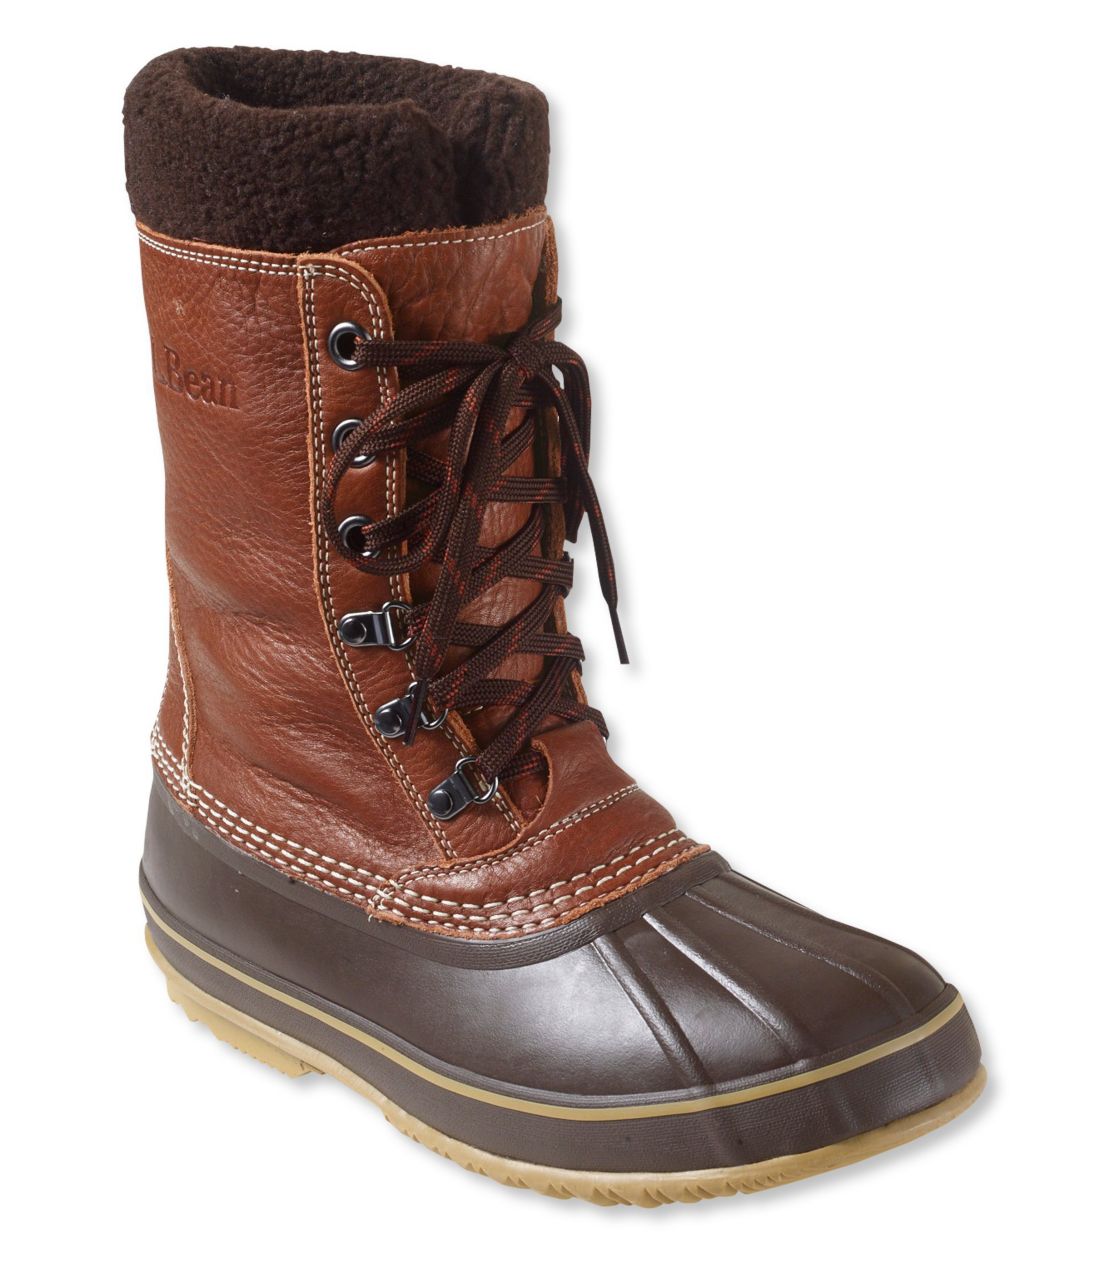 エル・エル・ビーン・スノー・ブーツ、タンブル・レザー／Men's L.L.Bean Snow Boots with Tumbled Leather